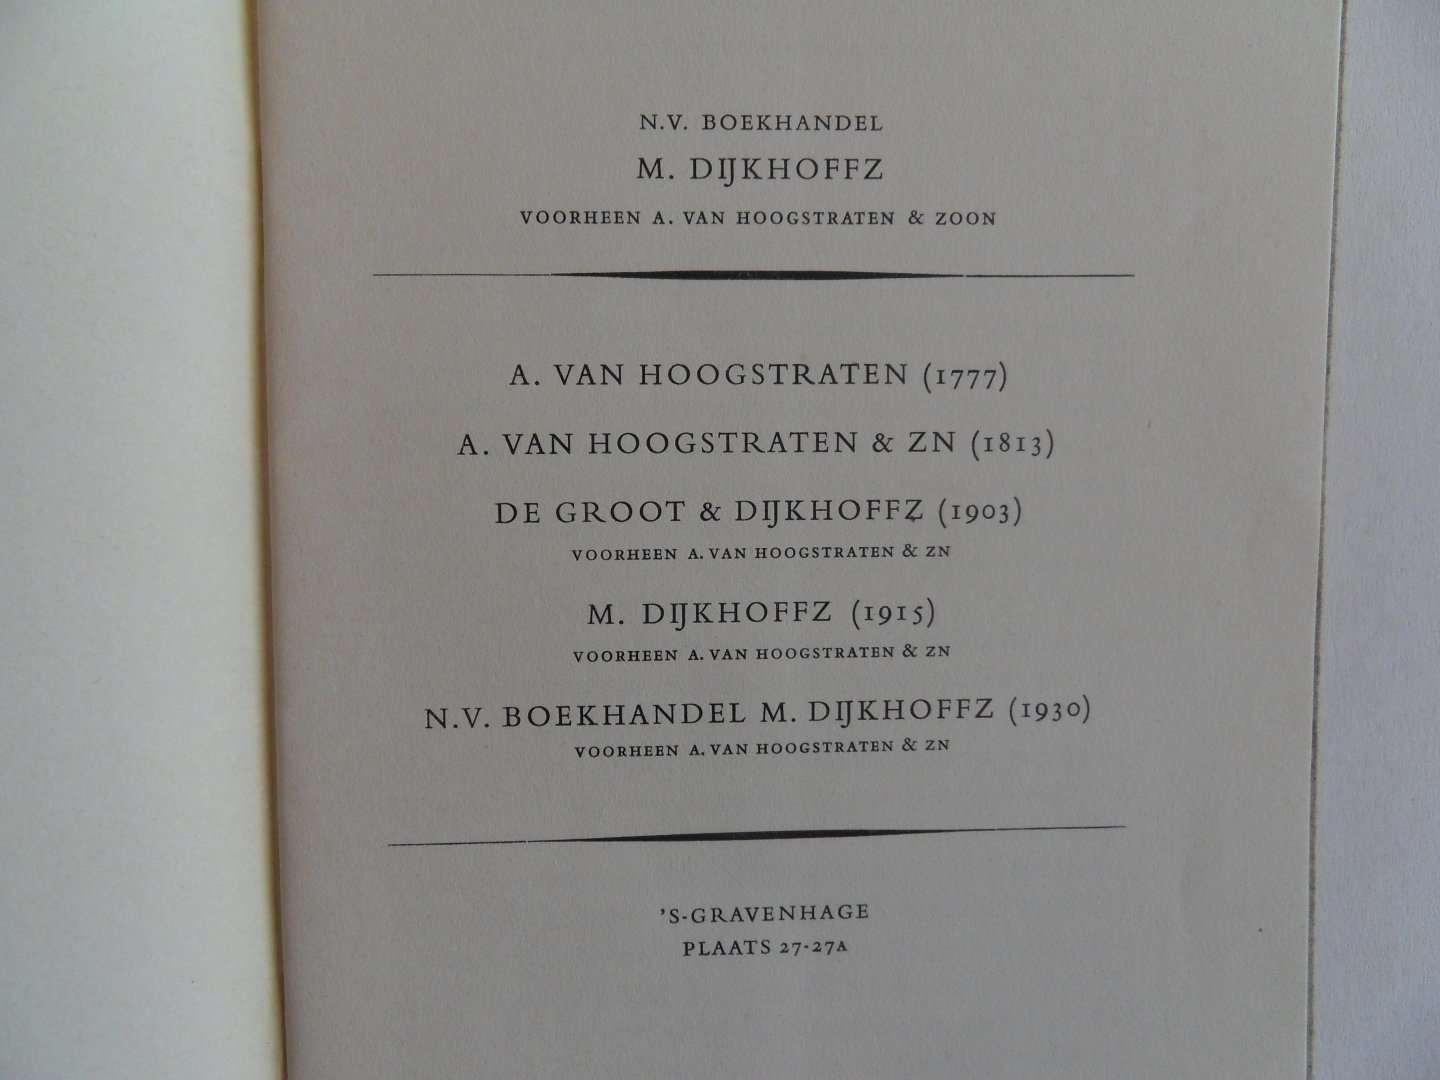 Wink, Th. [ 1897 - 1963 ]. - 1777 - 1813 N.V. Boekhandel M. Dijkhoffz, voorheen A. van Hoogstraten & Zoon 1903 - 1953.